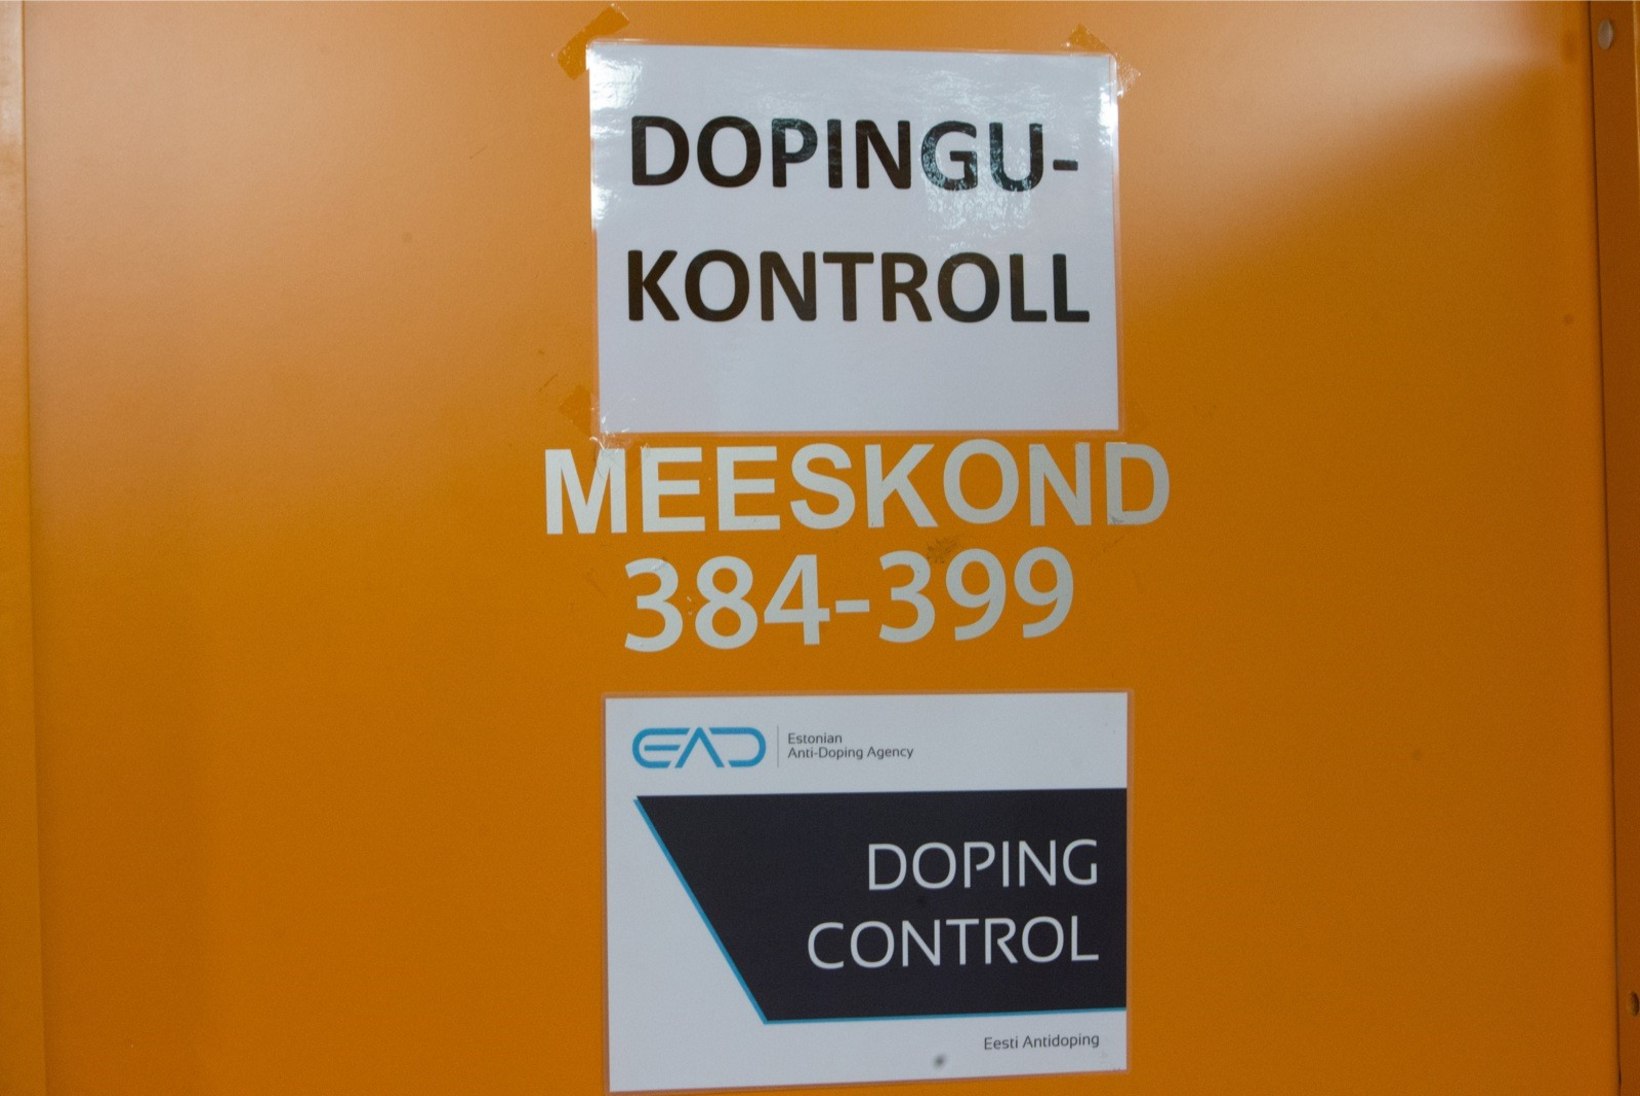 PALJASTUS SOOMES: Gerd Kanteri rivaal tunnistab, et tema autost leiti dopinguaineid!